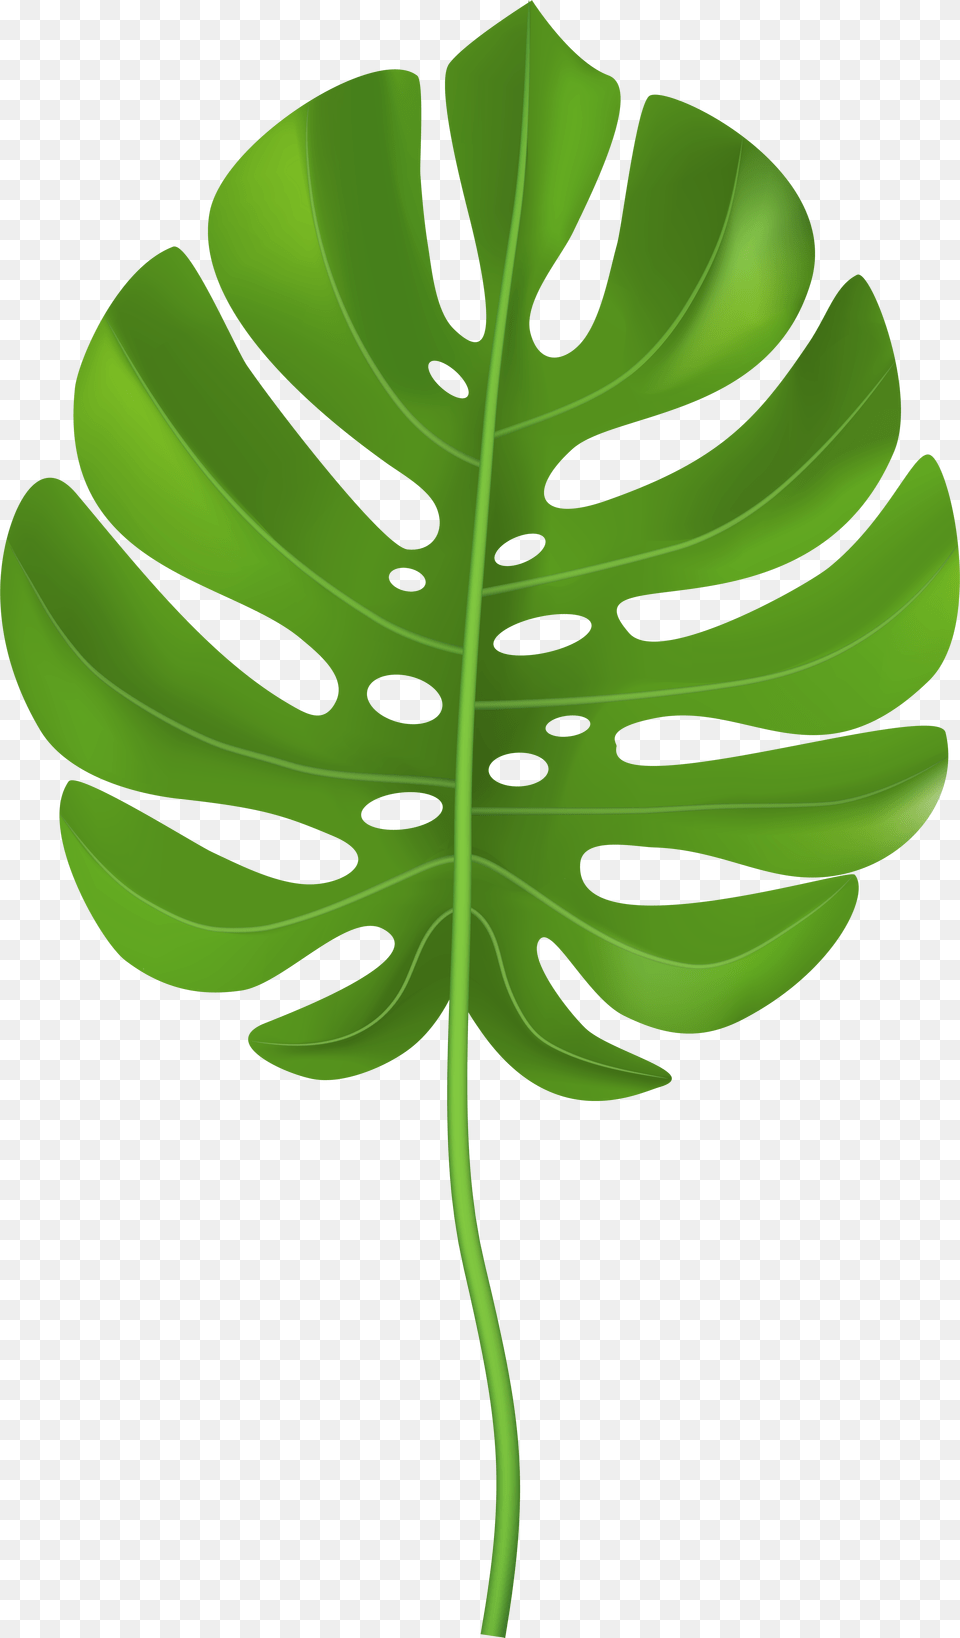 Tropical Palm Leaf Transparent Clip Art Image Clip Art Palm Leaf, Plant Free Png